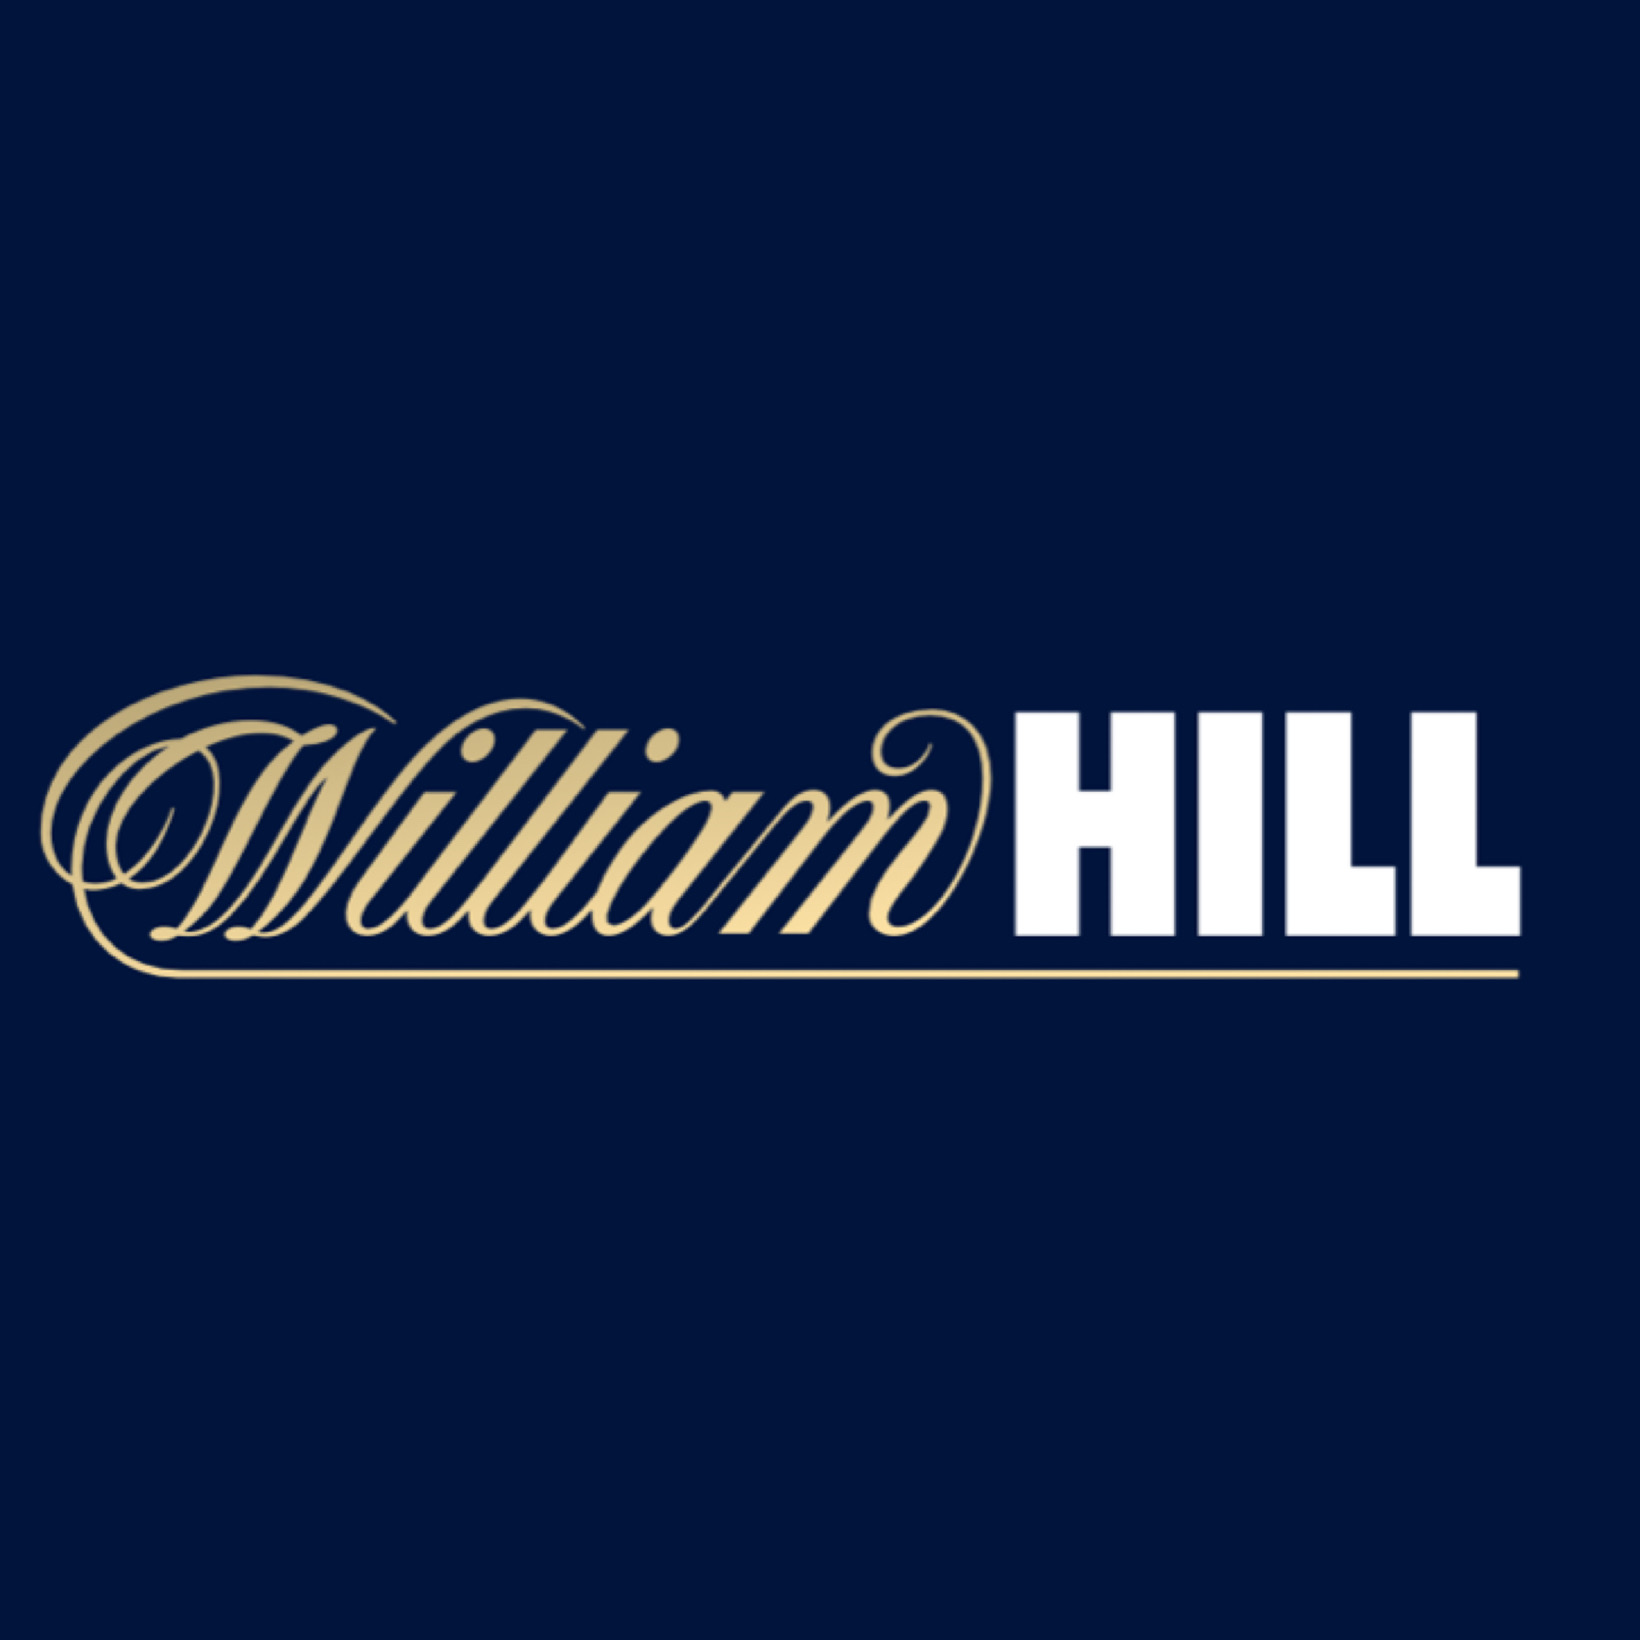 William Hillアイコンの画像